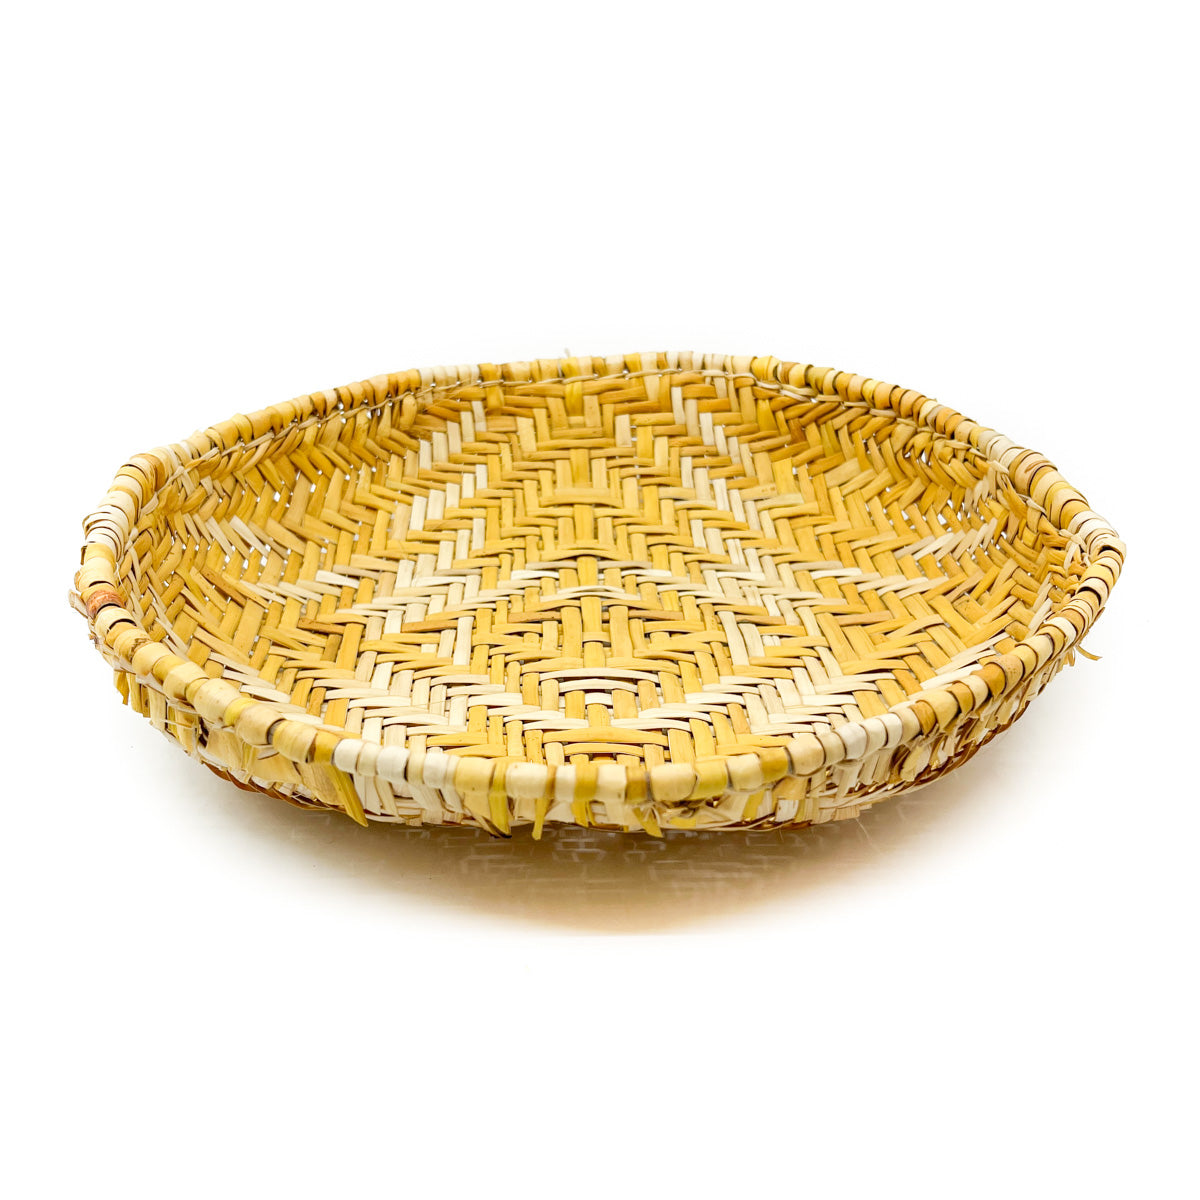 Hopi Plaited Winnowing Basket